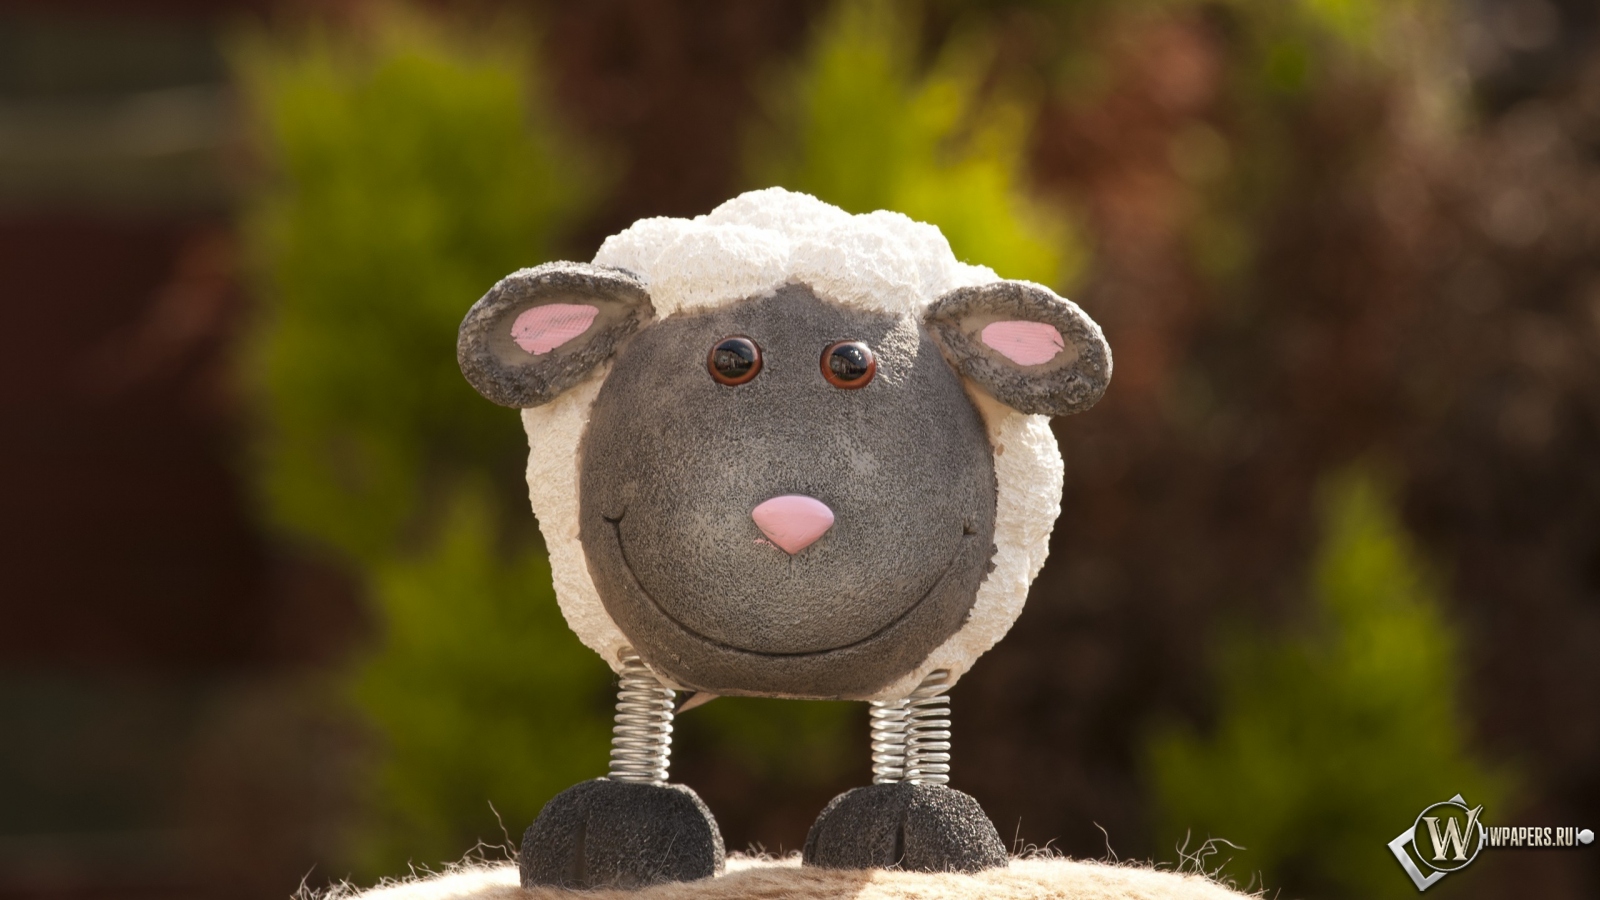 Игрушечная овечка 1600x900